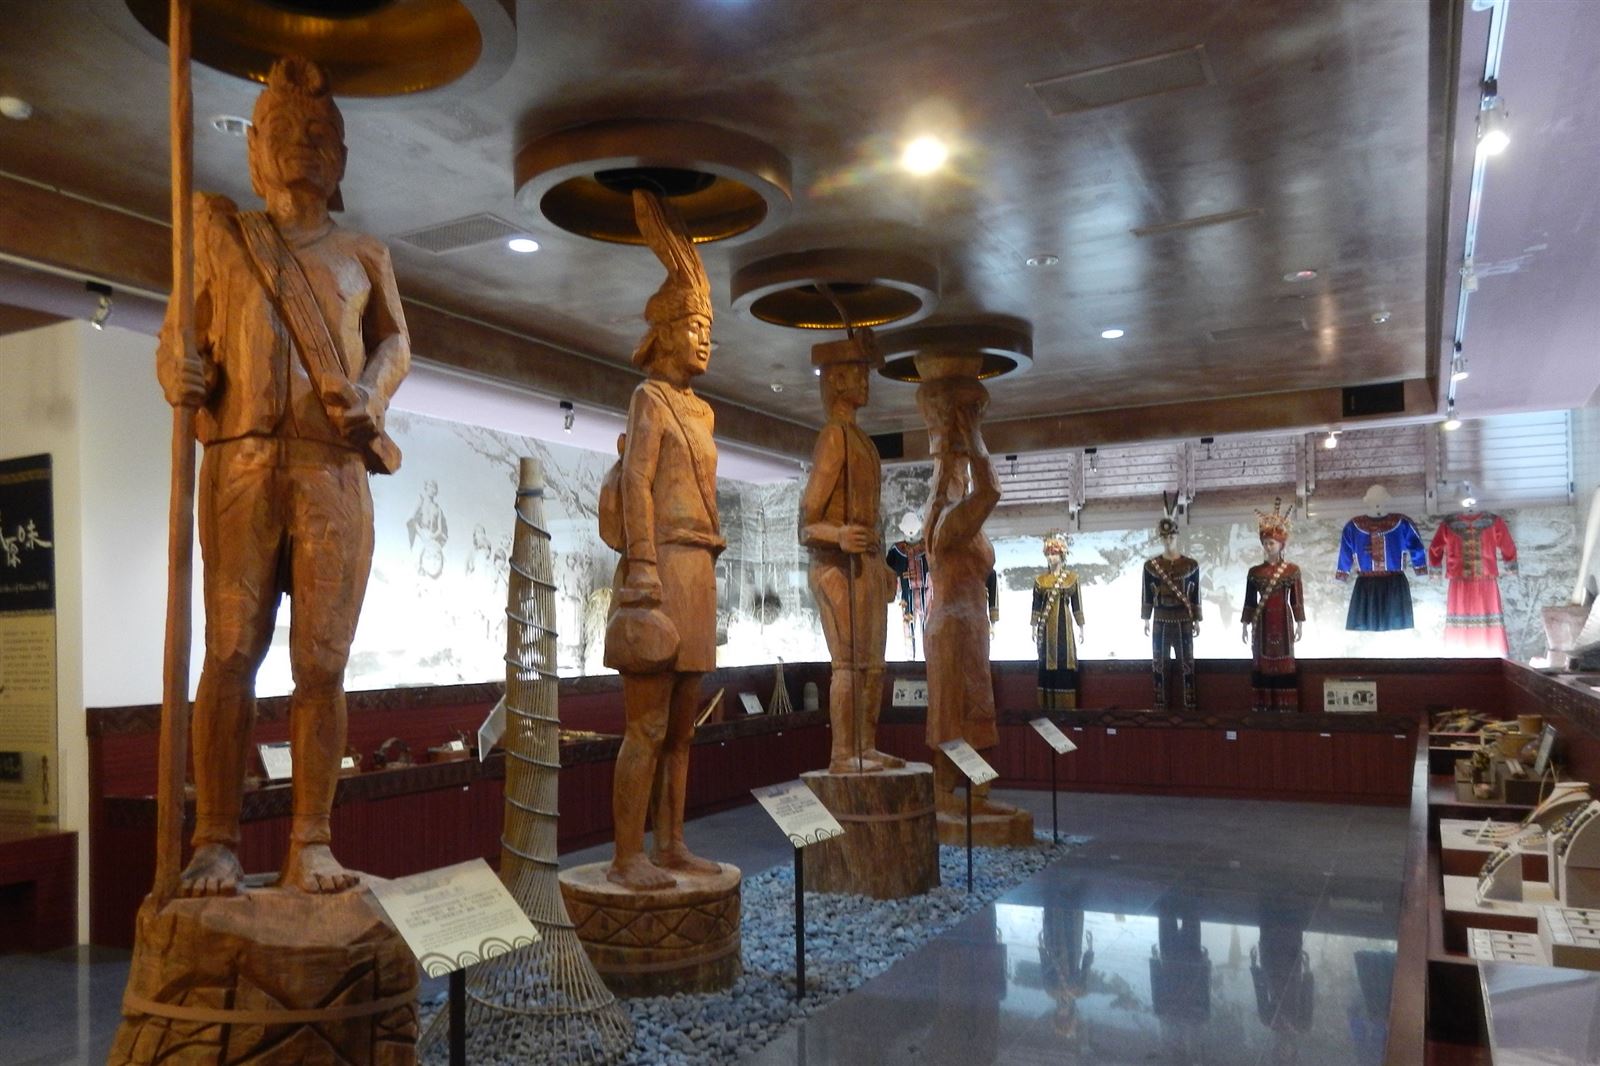 1F 原住民文物展示室-排灣族及魯凱族的社會階制度